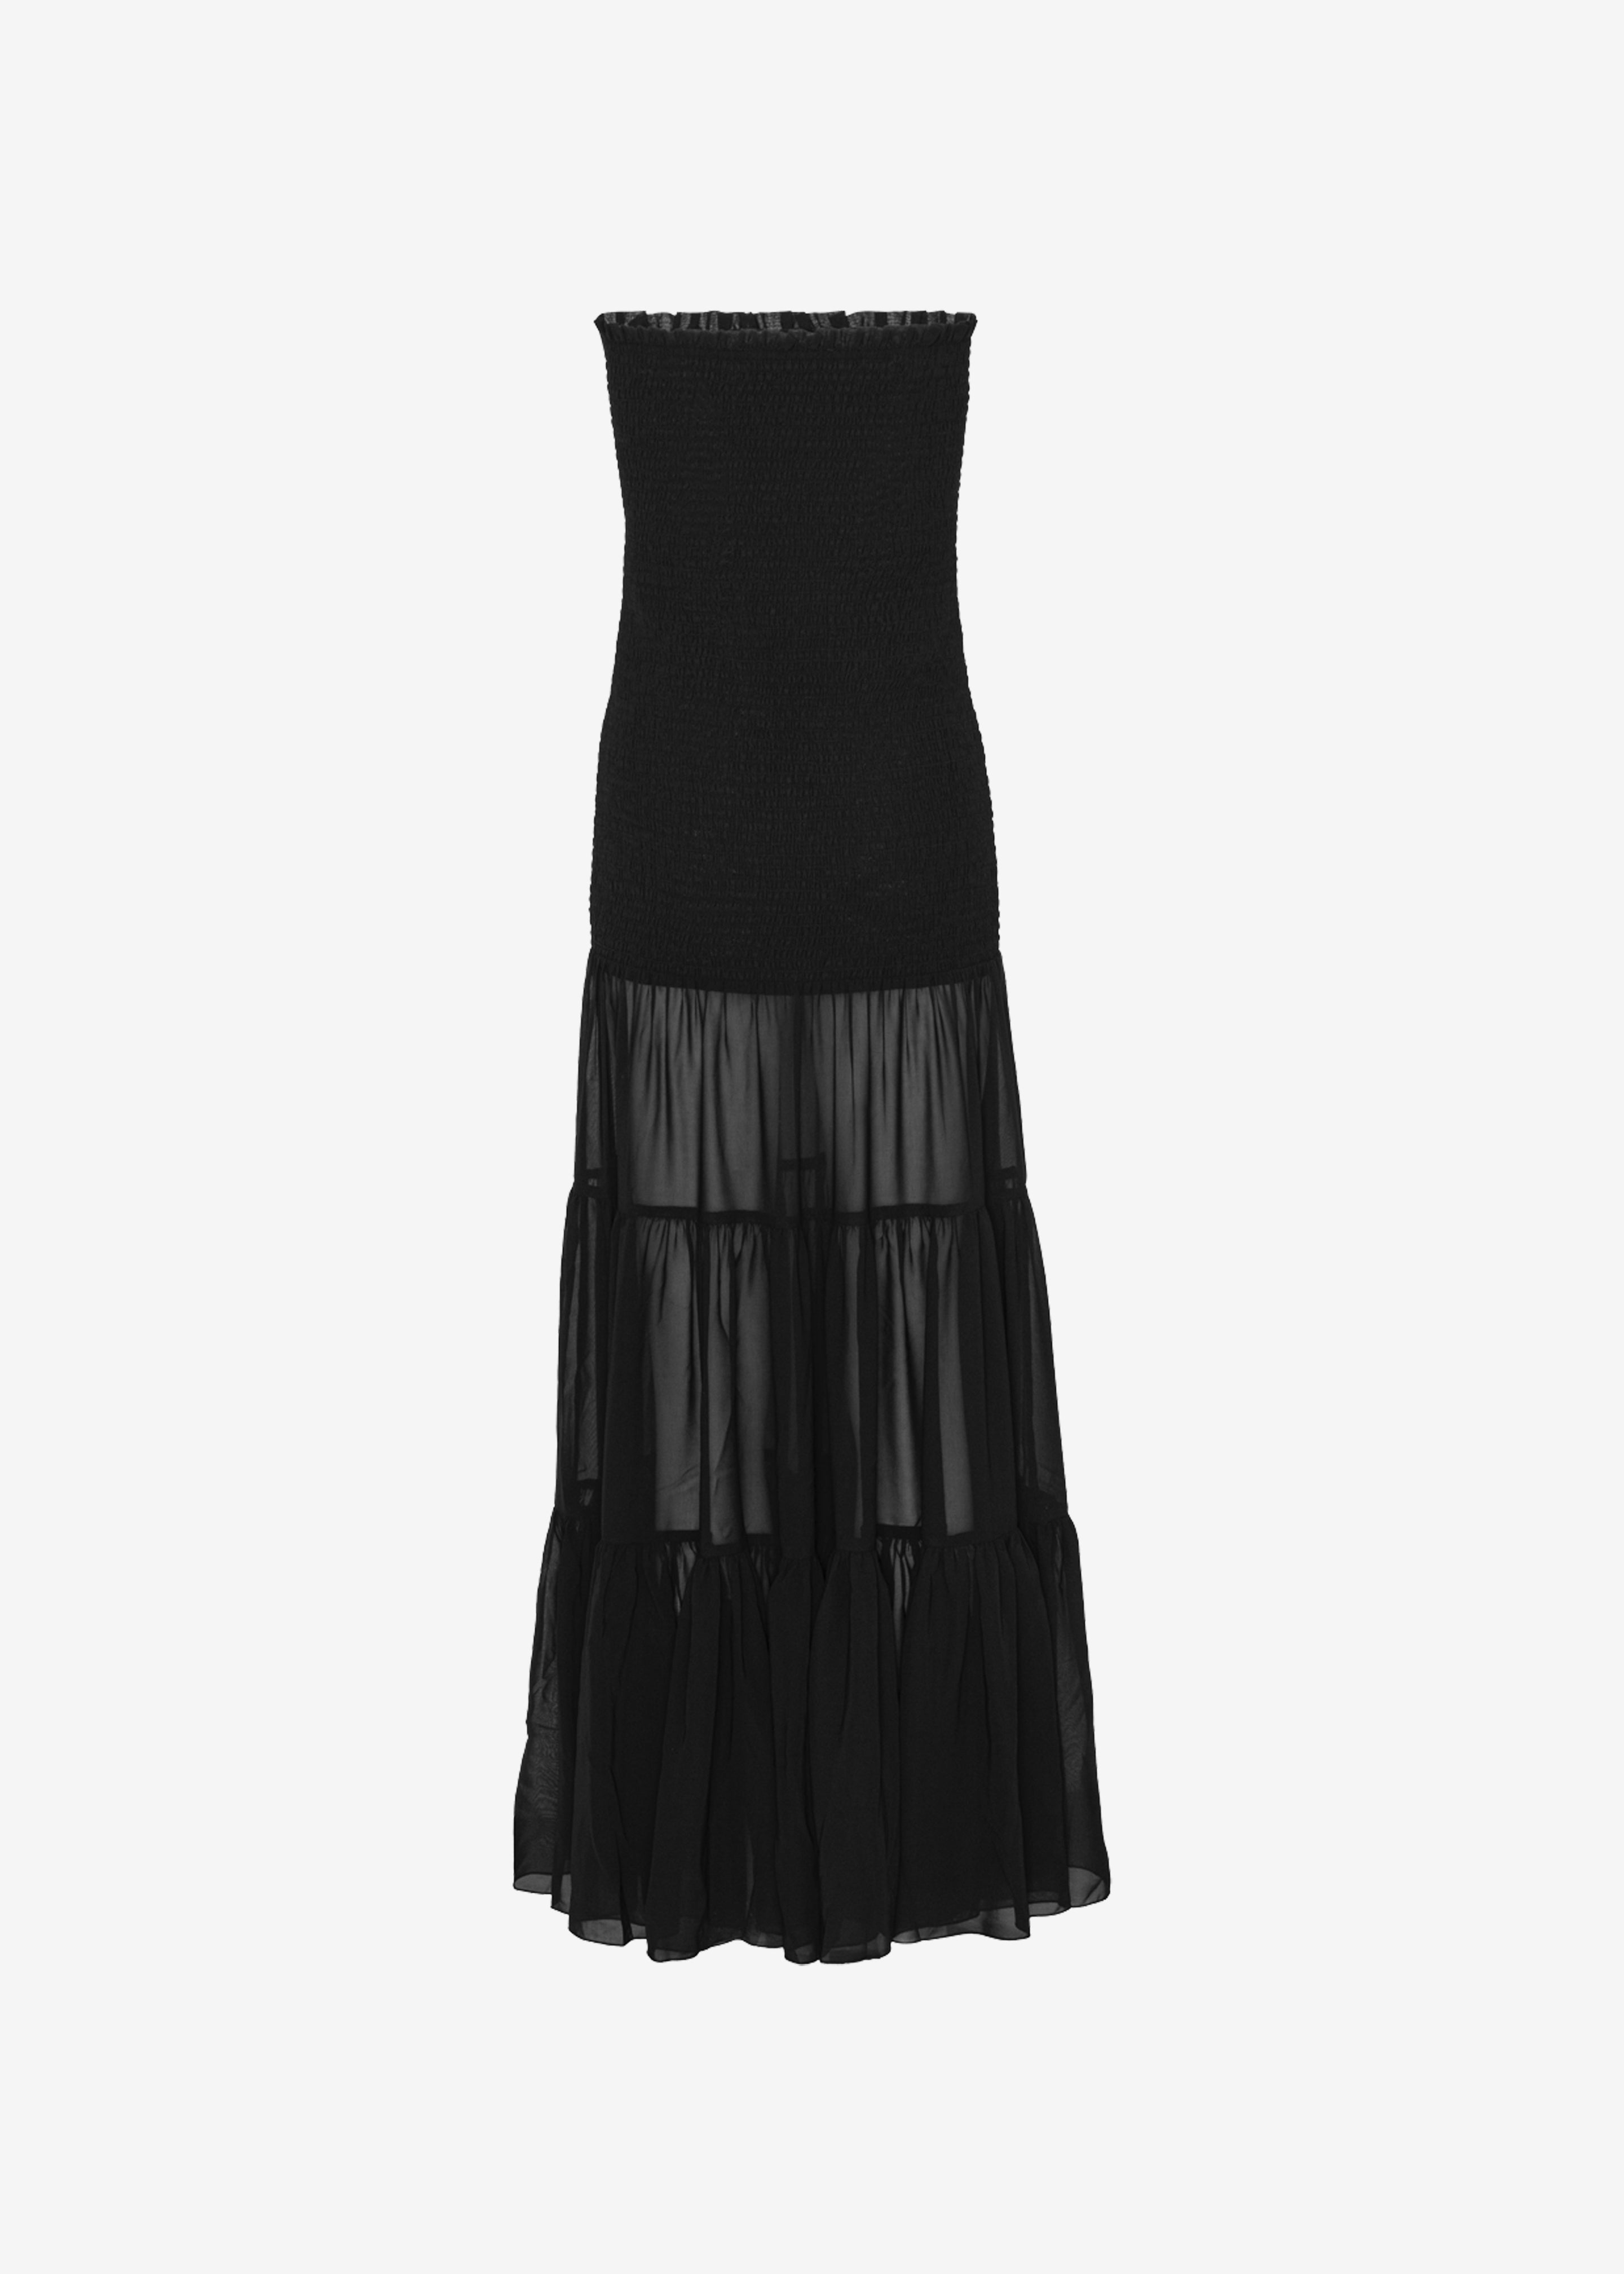 Rotate Chiffon Strapless Dress - Black - 7